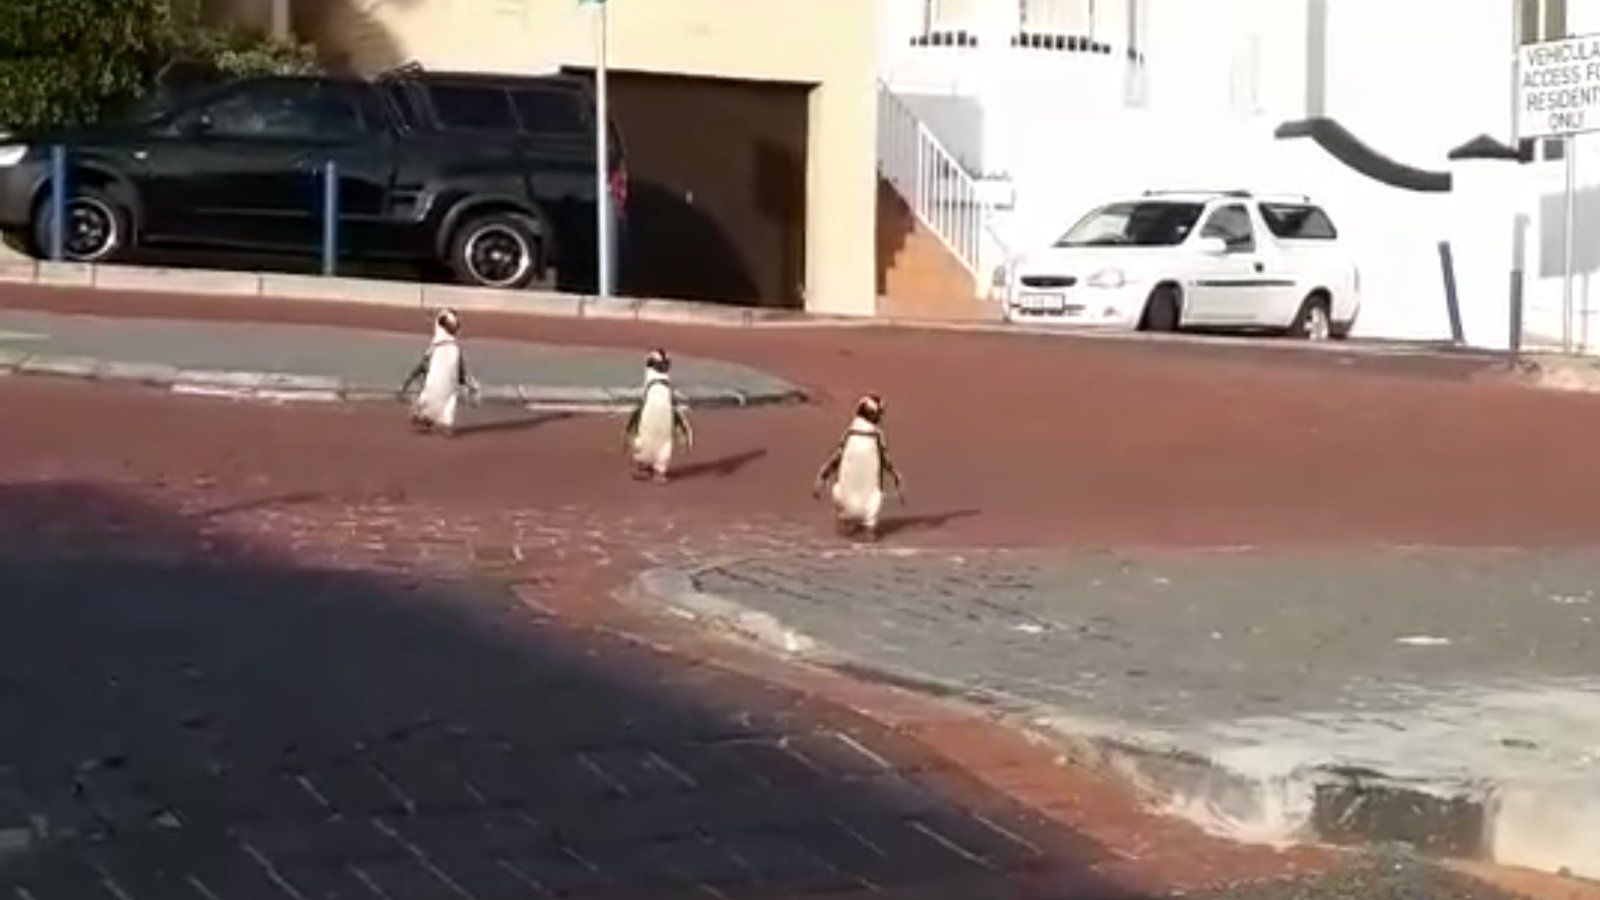 Pingvinek sétálnak a városban.